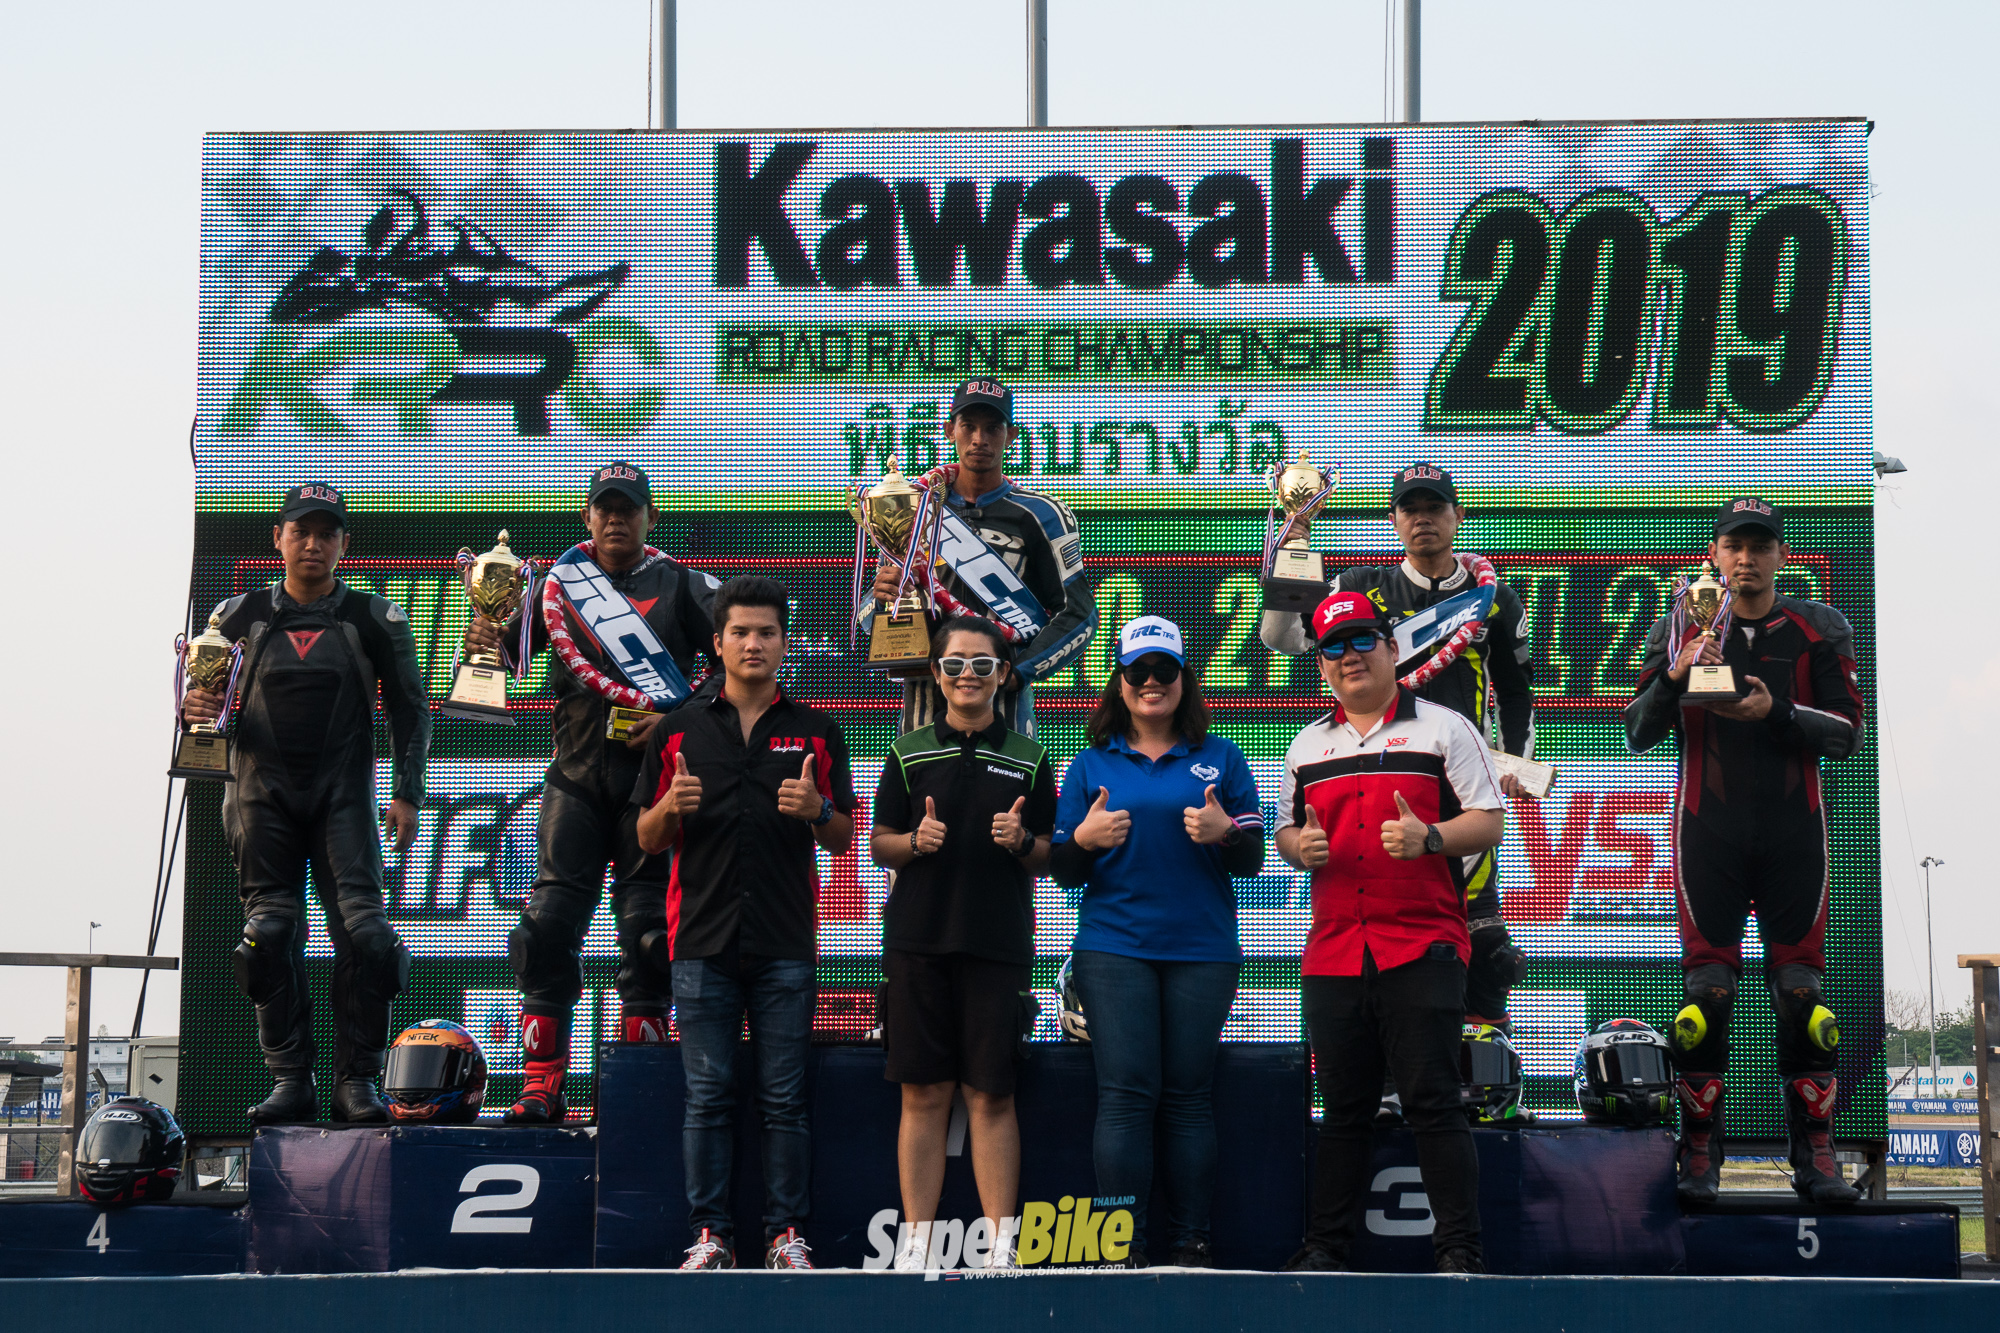 Kawasaki Road Racing Championship